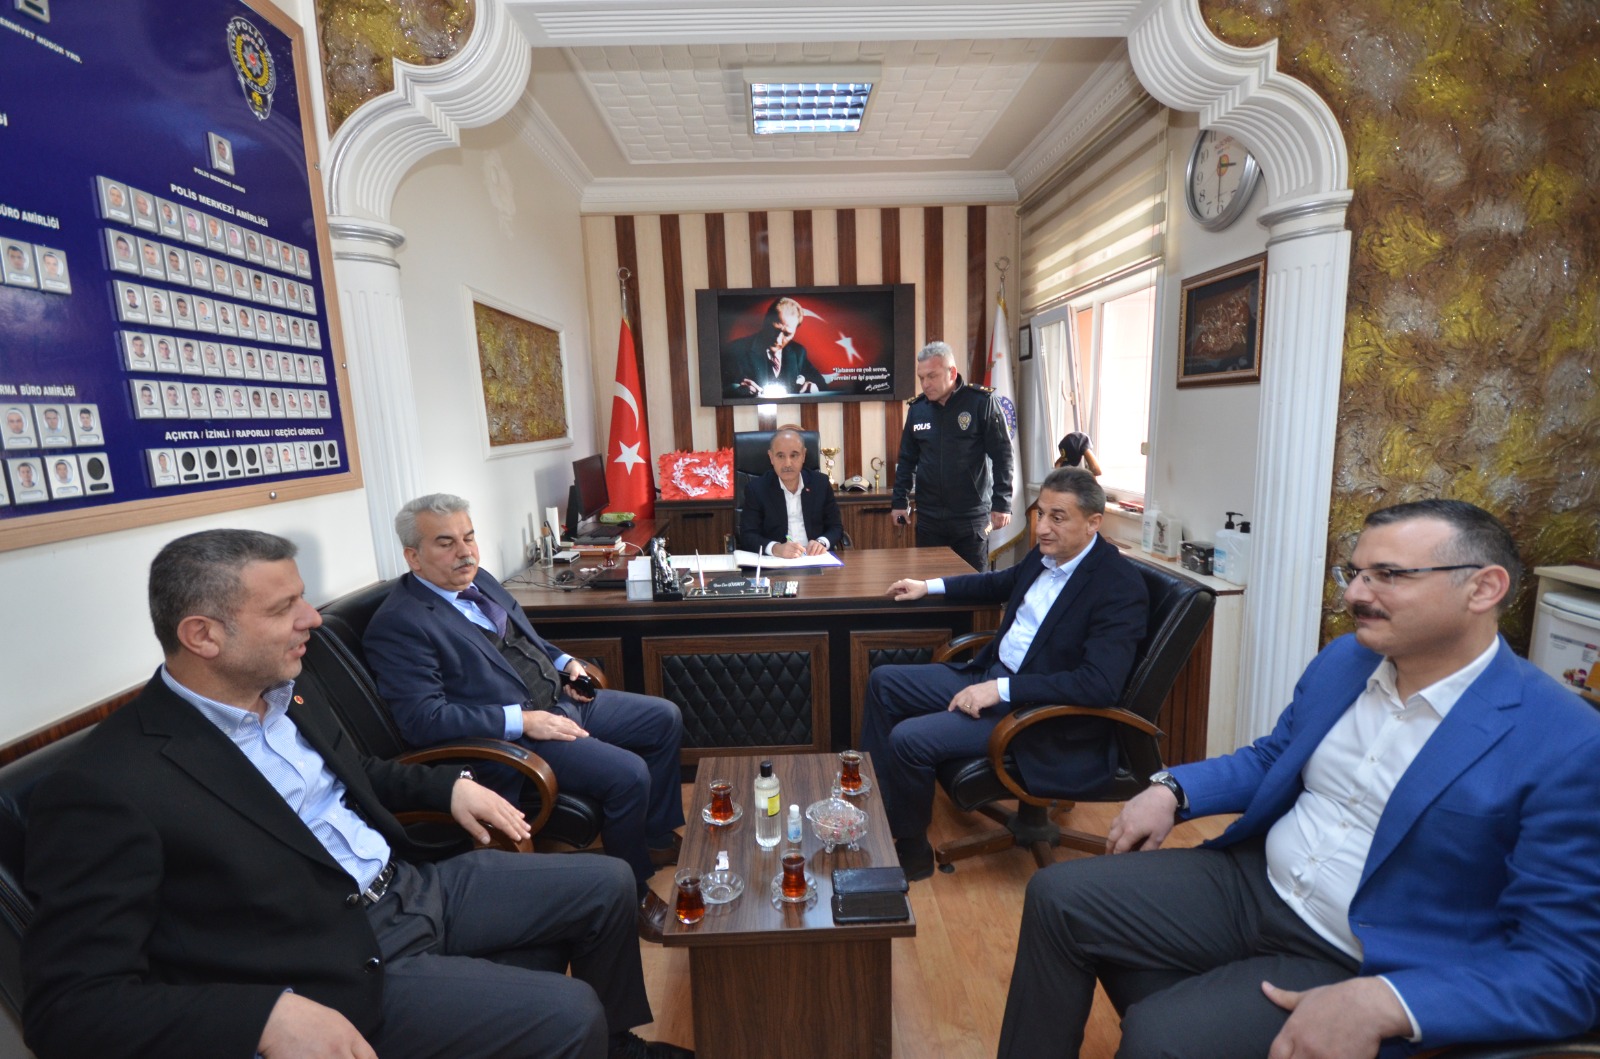 Emniyet Genel Müdürü Mehmet Aktaş Sinop Valiliği ve Boyabat İlçe Emniyet Müdürlüğü’ne Ziyaret Gerçekleştirdi